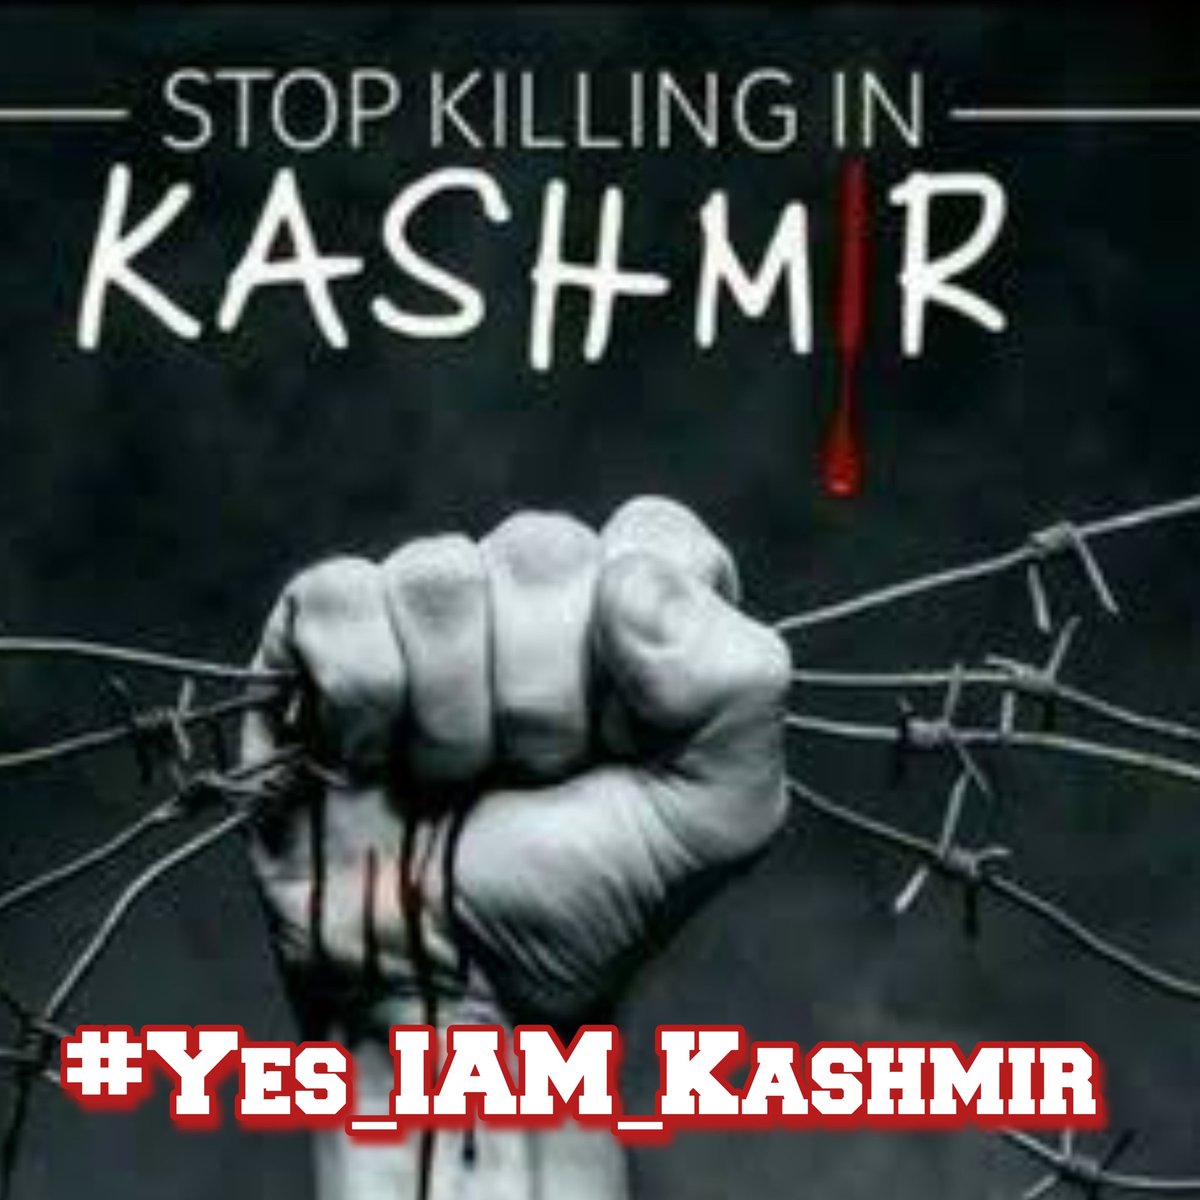 Yes I'm Kashmir 😍

#Yes_Iam_Kashmir